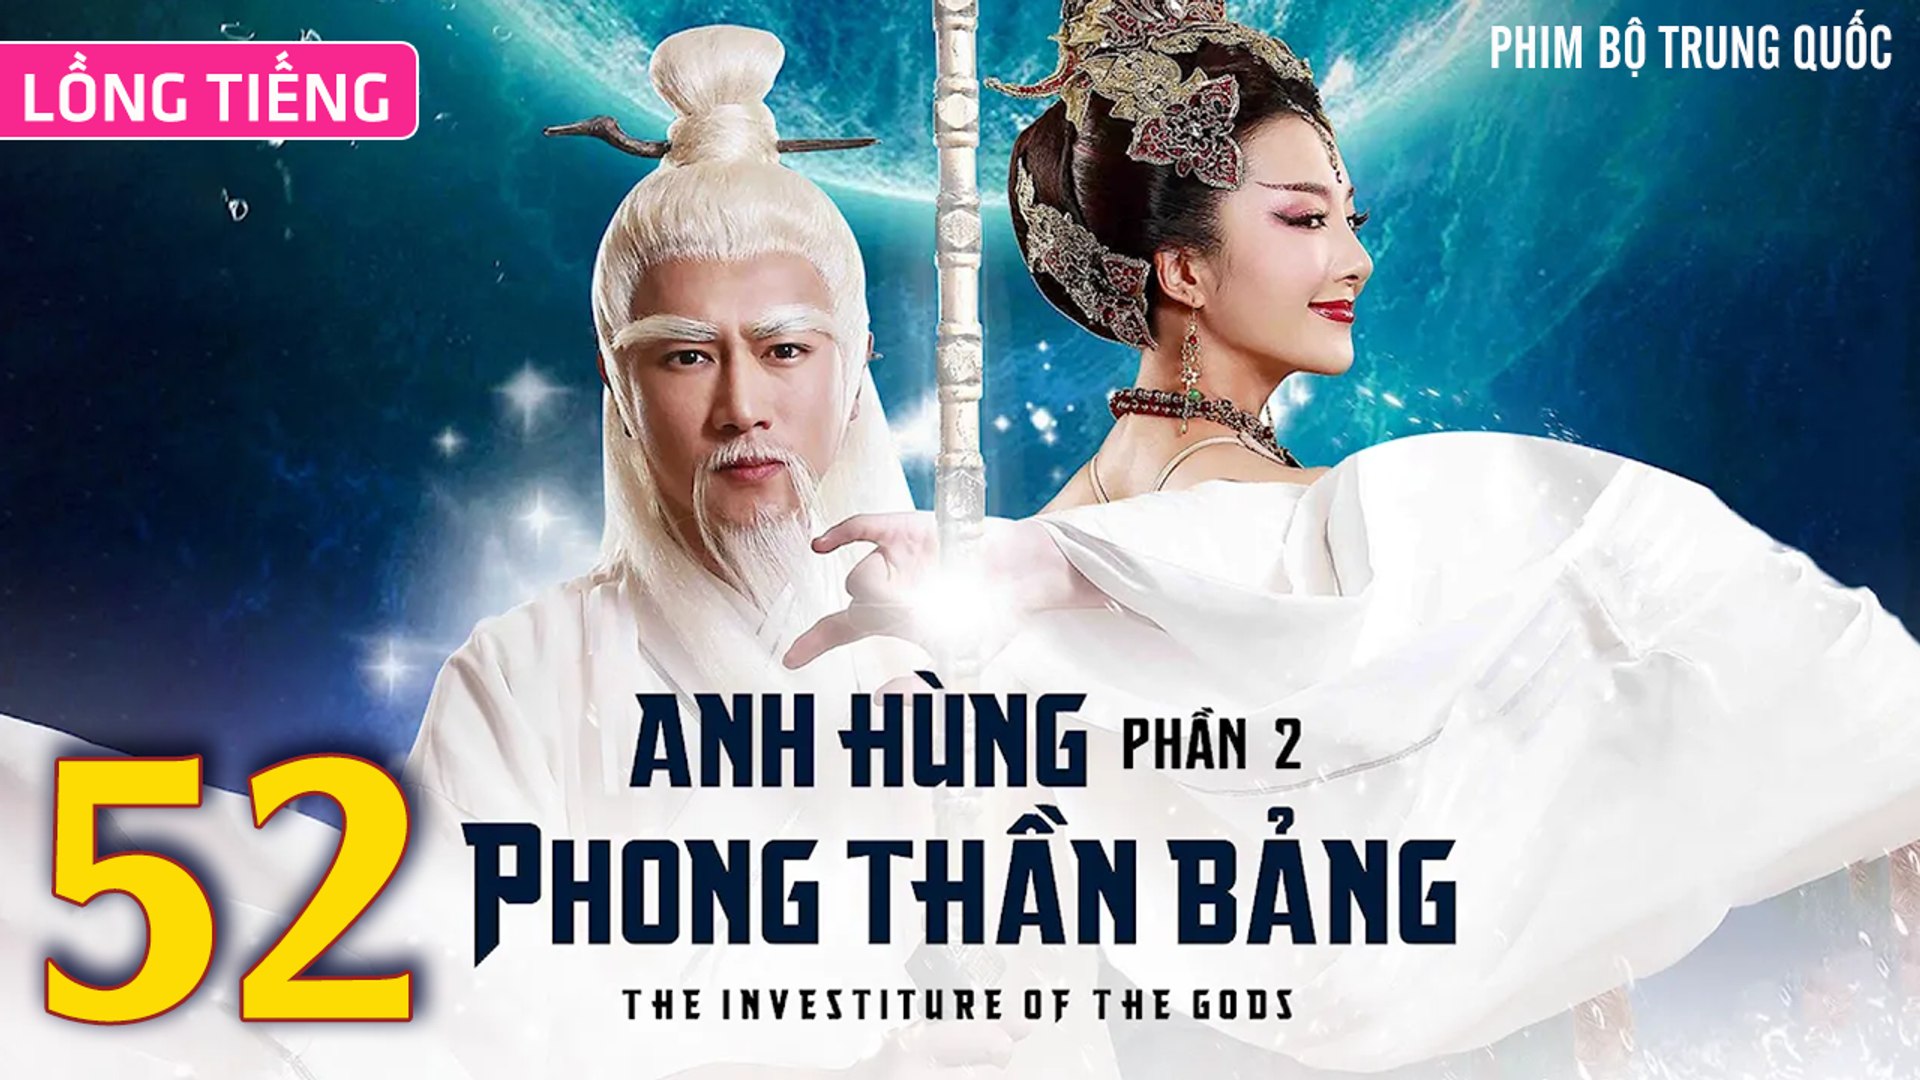 ⁣Phim Bộ Hay: ANH HÙNG PHONG THẦN BẢNG 2 - Tập 52 (Lồng Tiếng) | Phim Bộ Trung Quốc Hay Nhất 2023